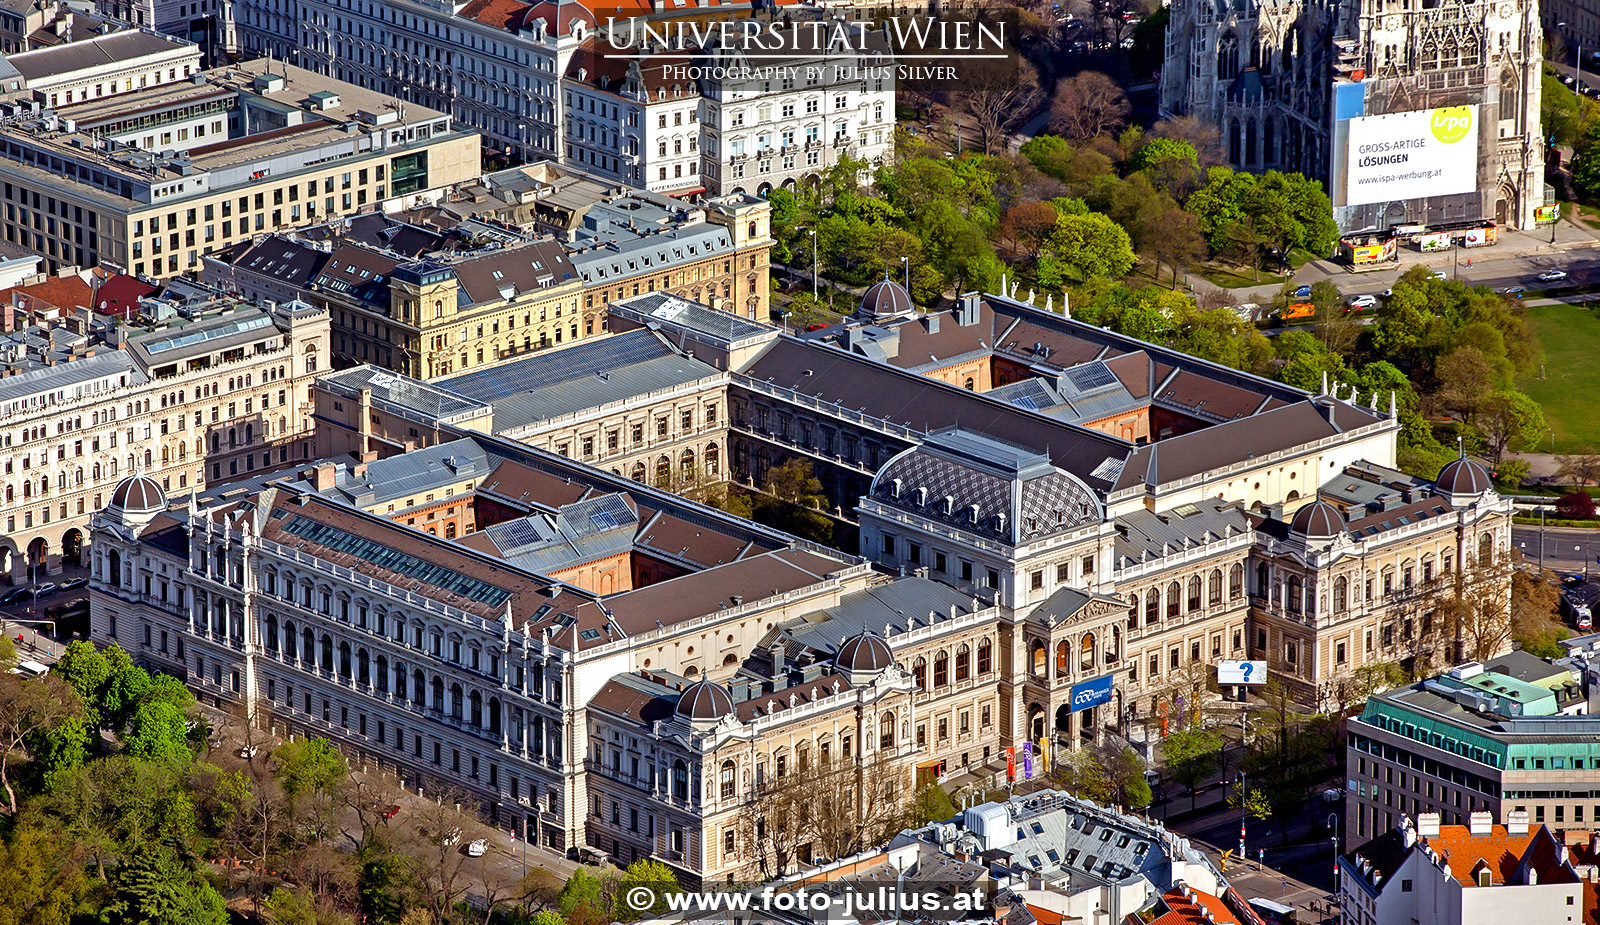 W6306a_Universitat_Wien.jpg, 926kB